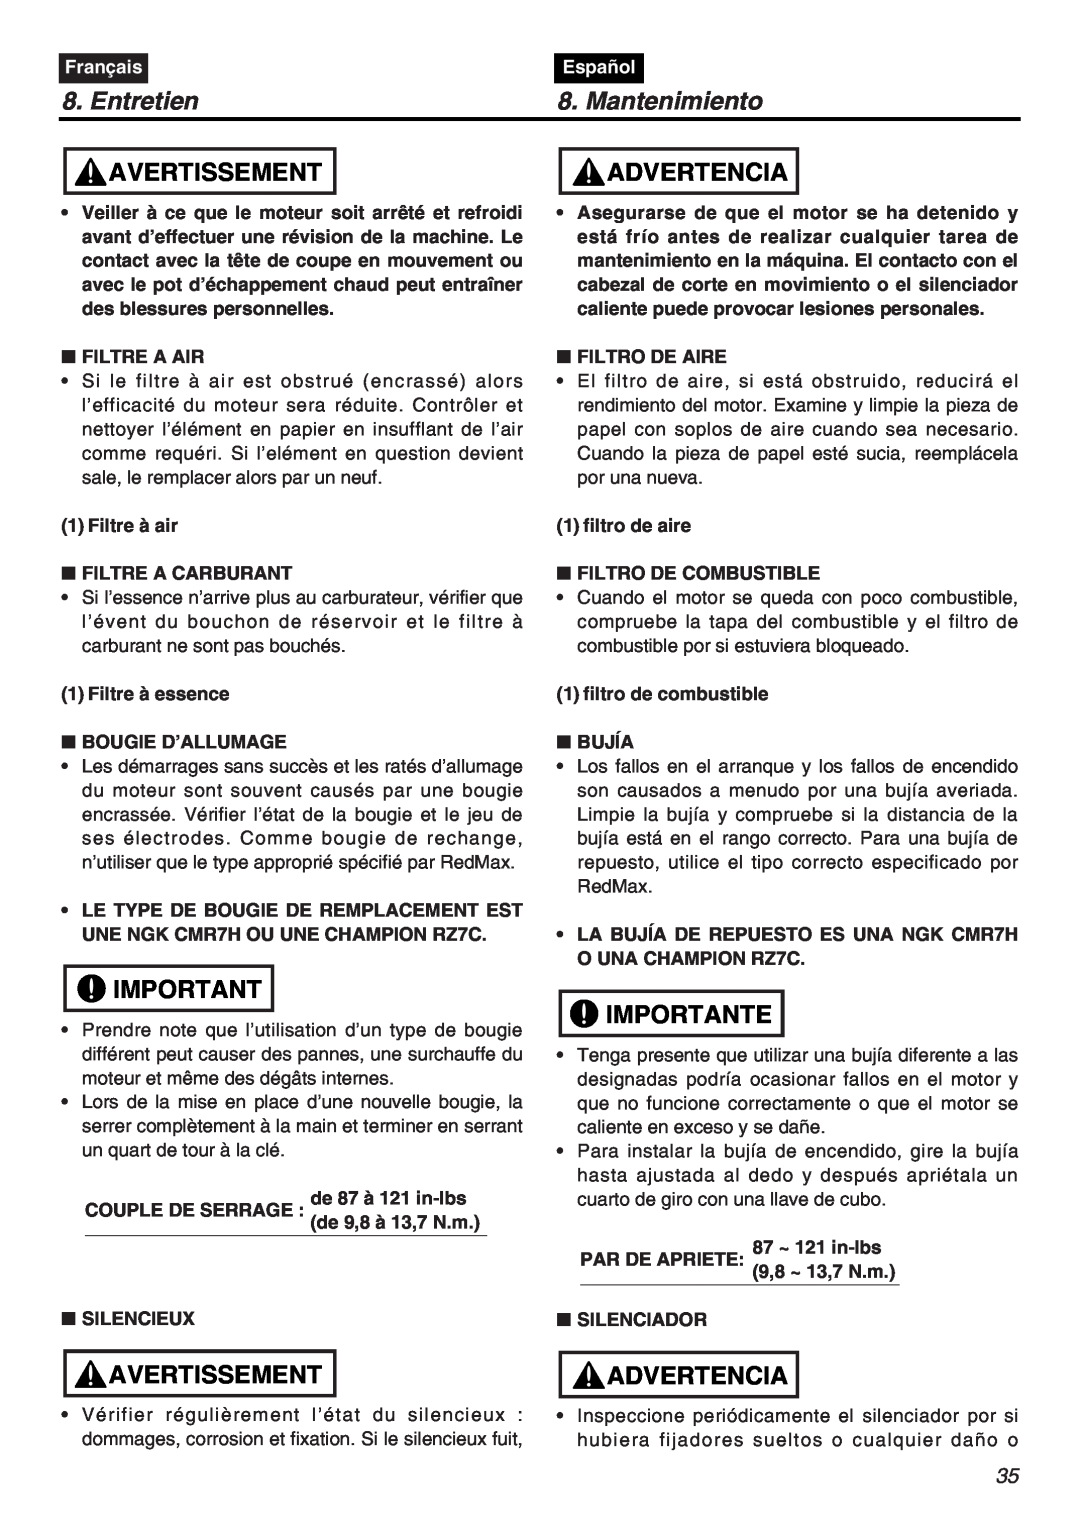 RedMax CHTZ2401L-CA, HTZ2401-CA manual Entretien, Mantenimiento, Avertissement, Advertencia, Importante, Français, Español 